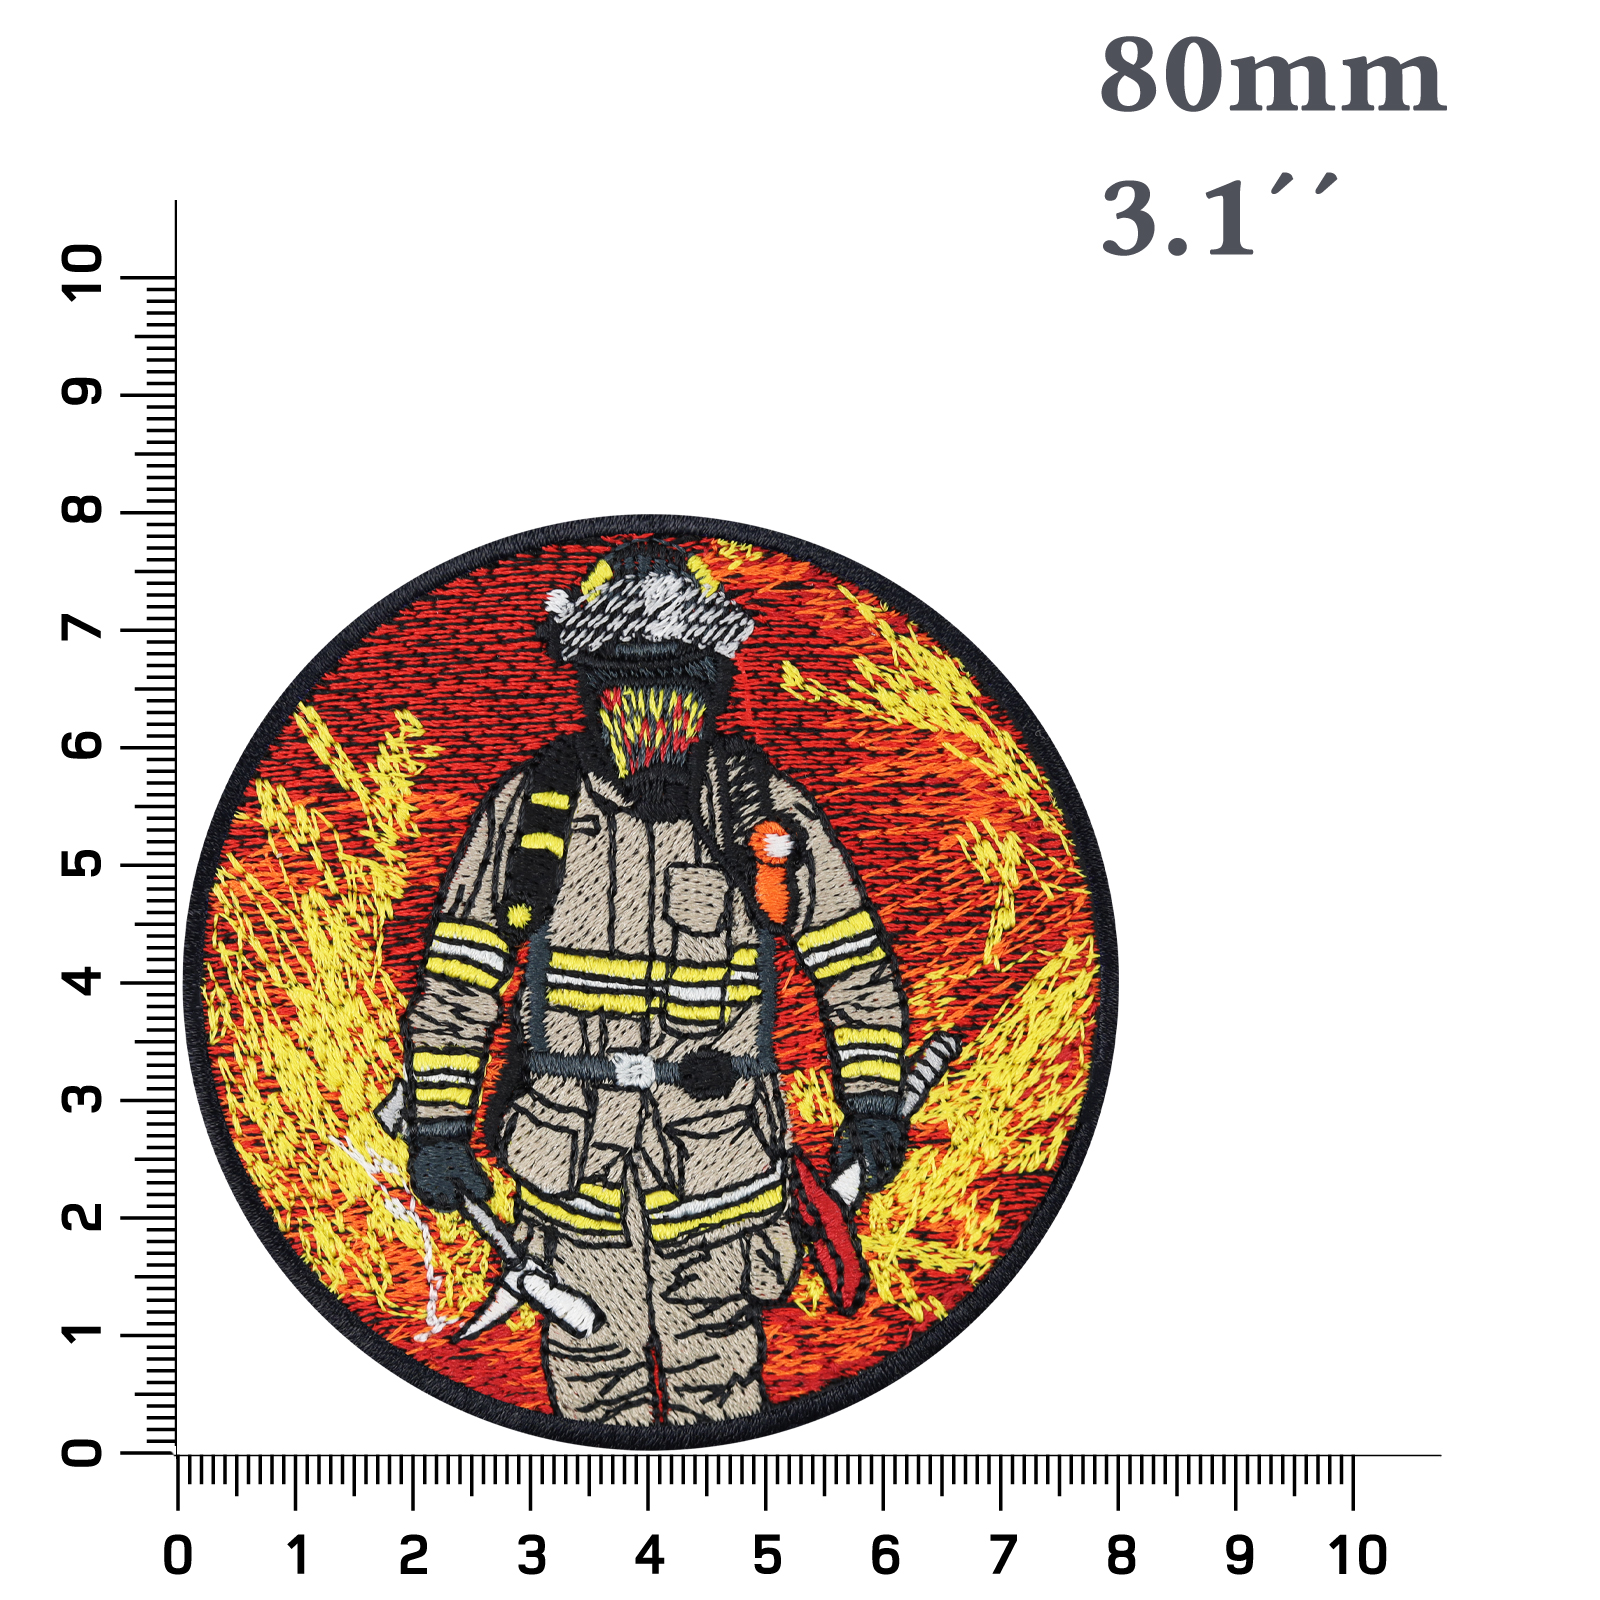 Feuerwehrmann - Patch